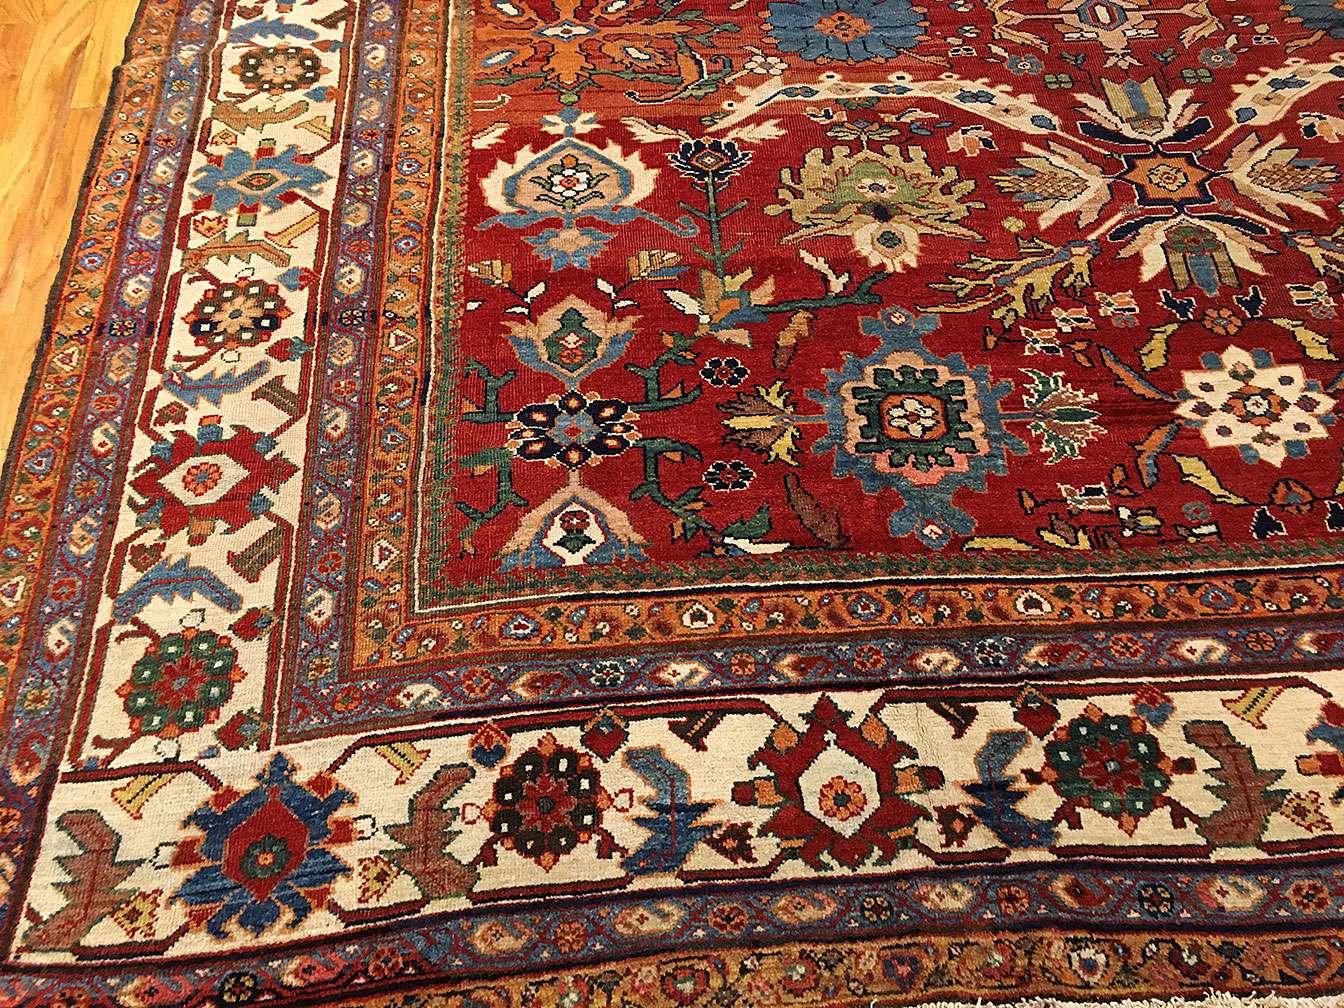 Antique sultan abad Carpet - # 51409